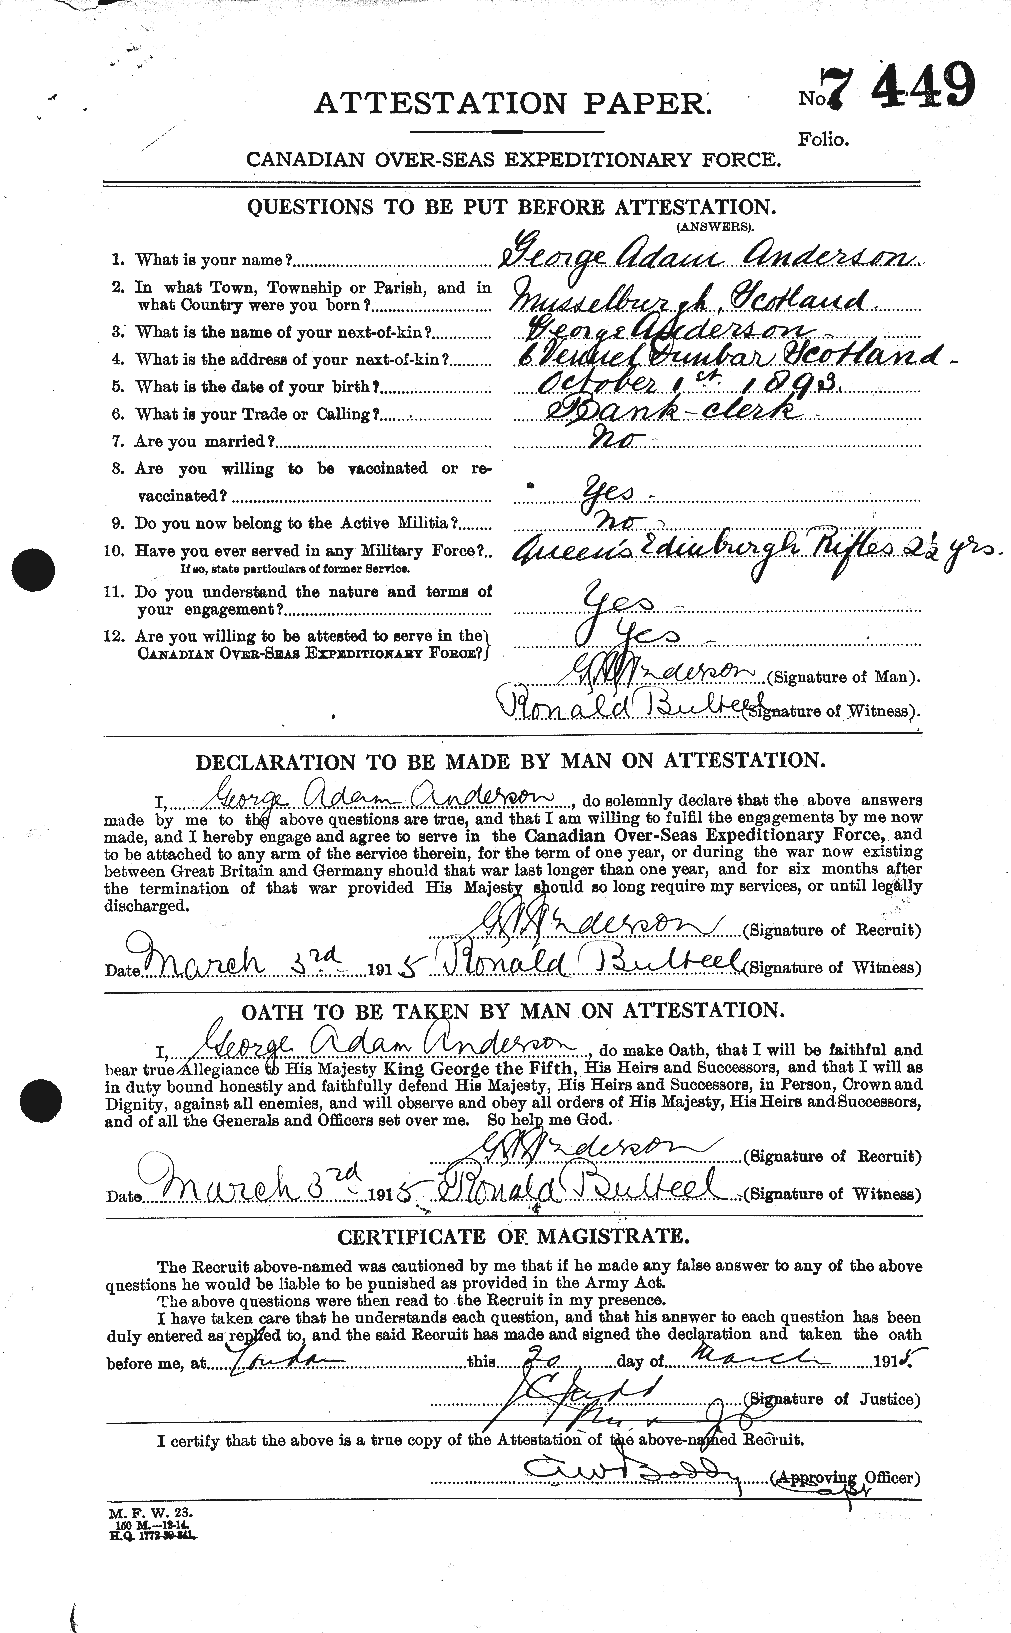 Dossiers du Personnel de la Première Guerre mondiale - CEC 209746a